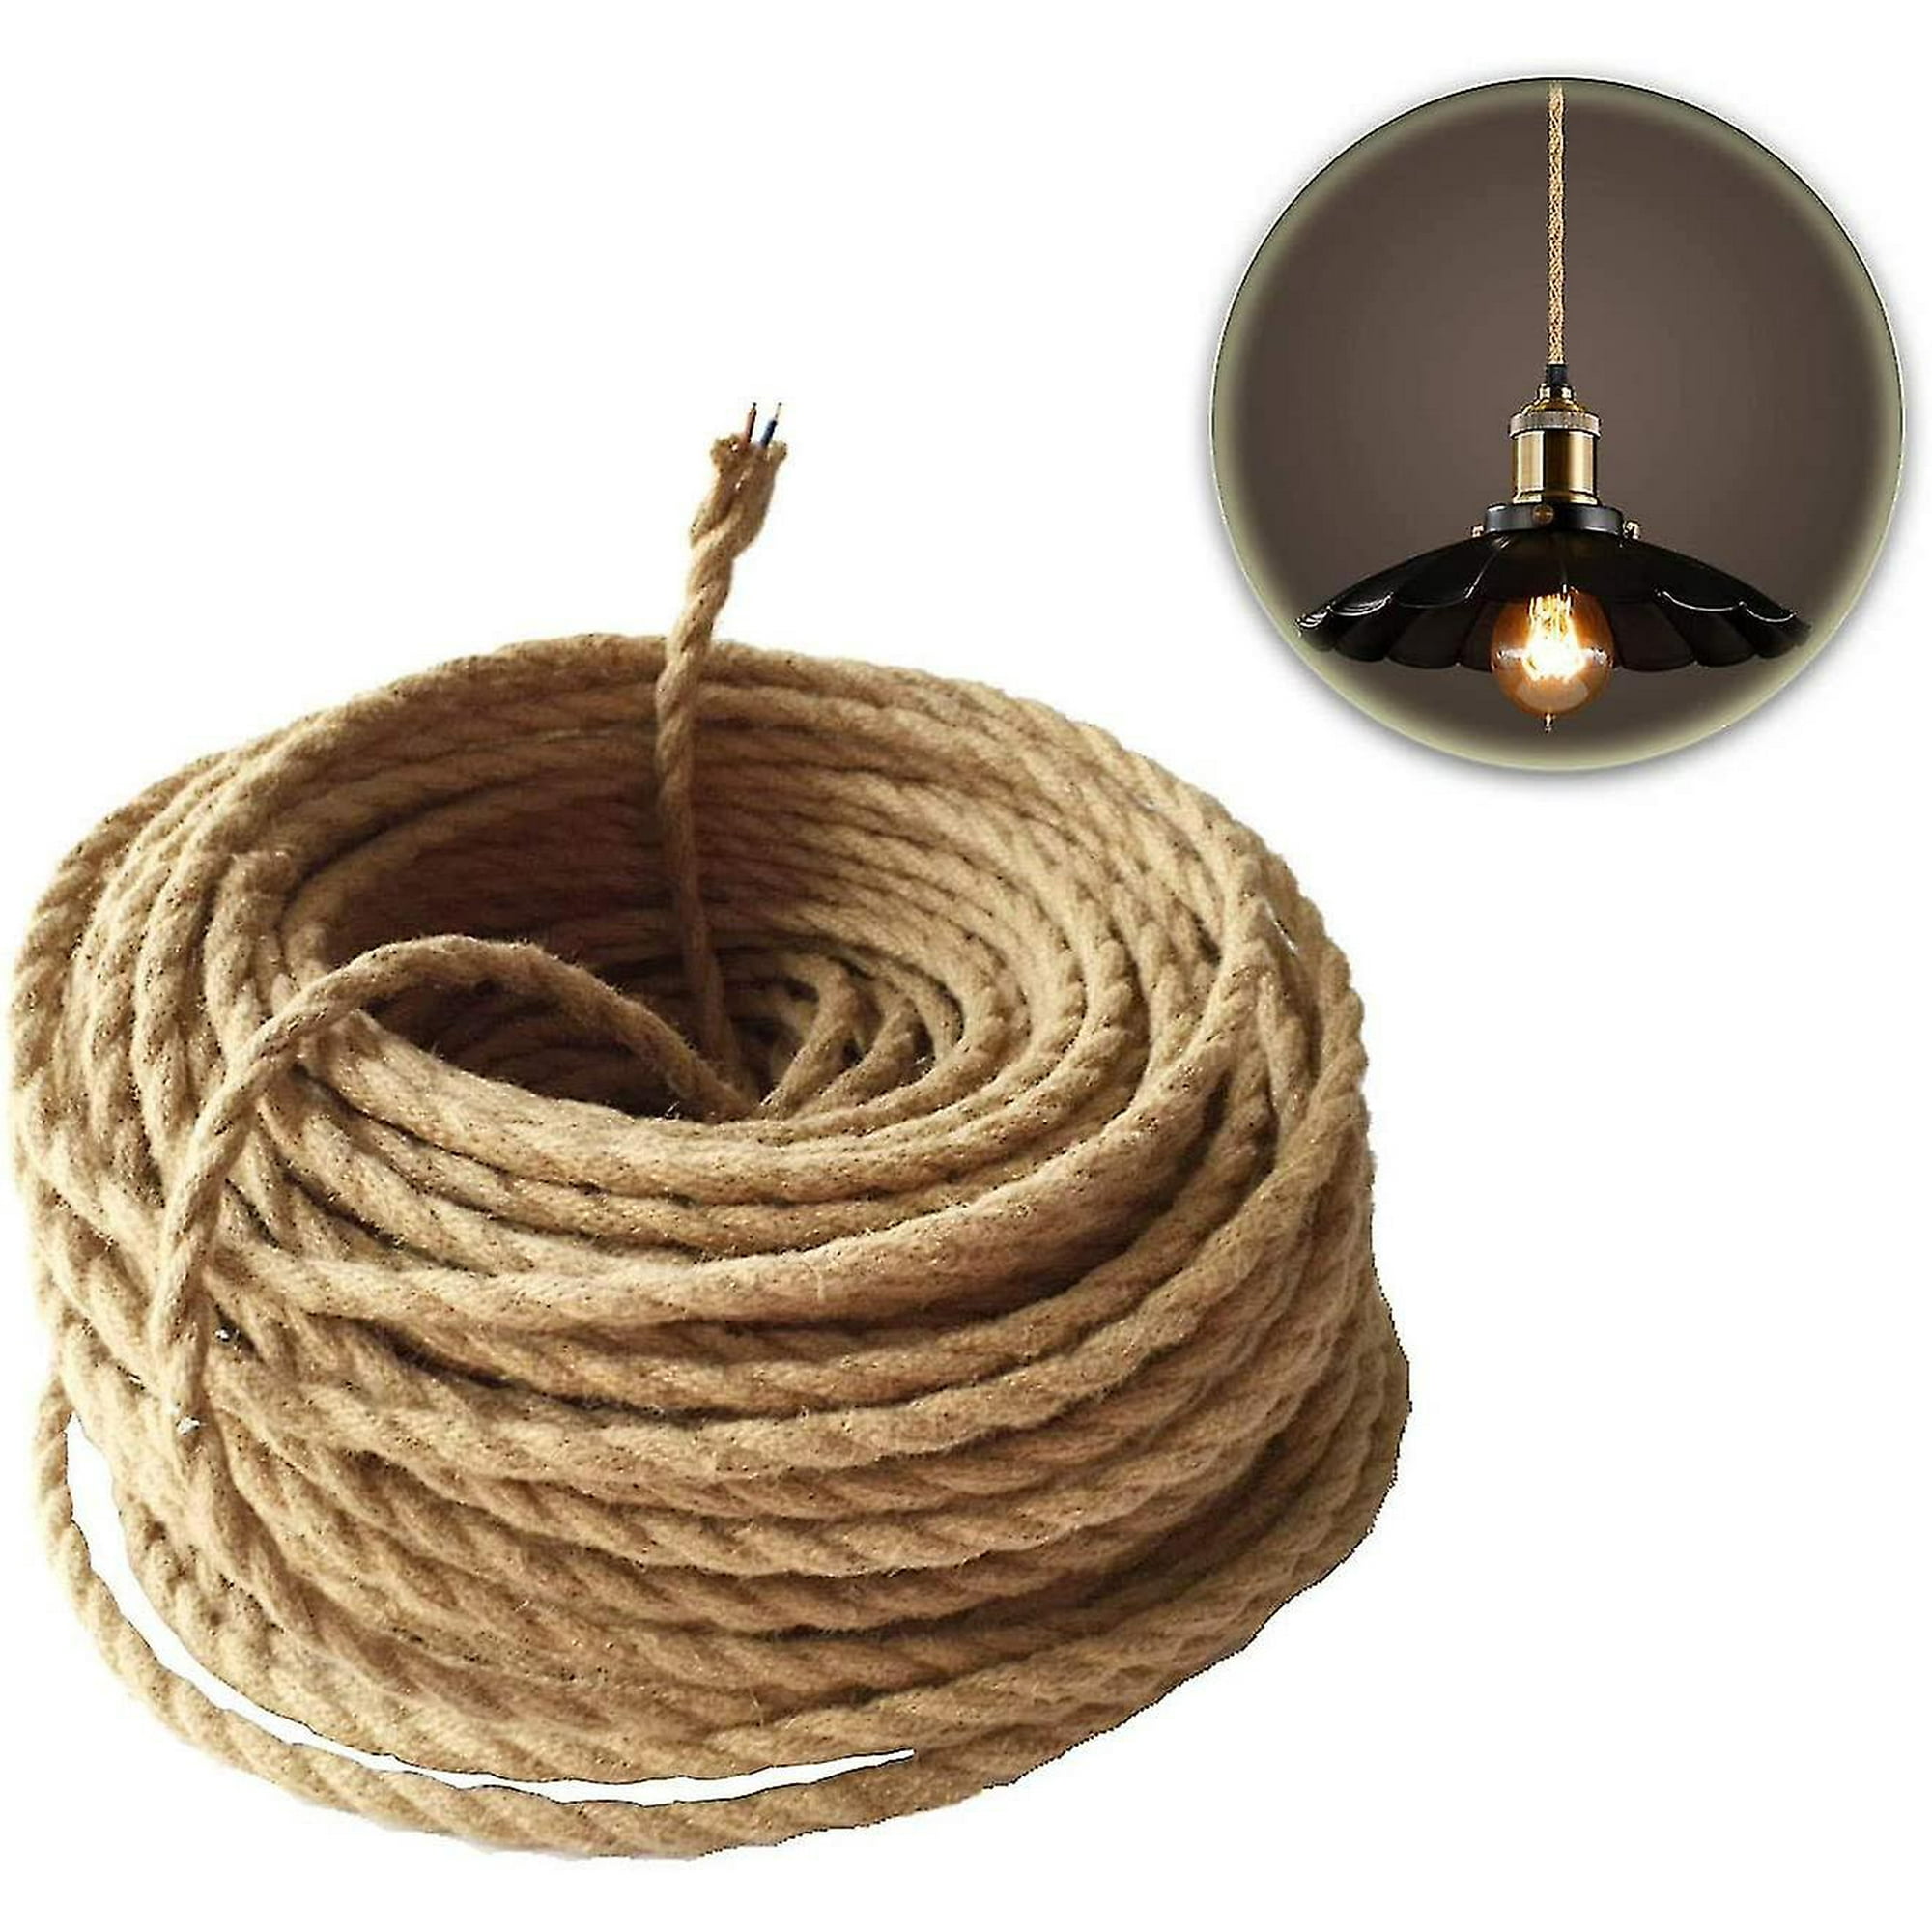 Cable eléctrico, cable de luz trenzado de cuerda de cáñamo vintage ultra  sensible Jadeshay A